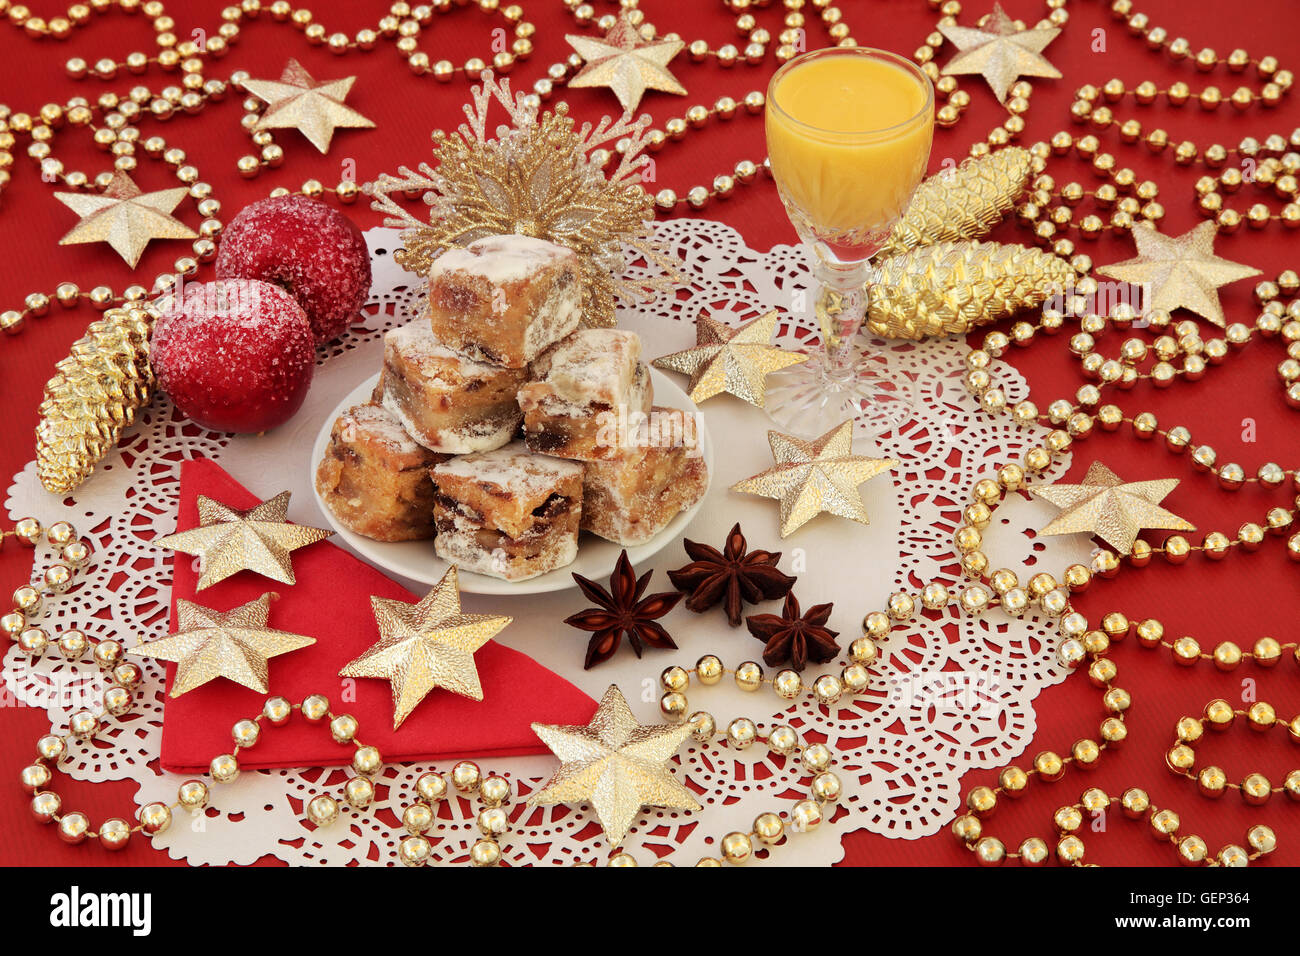 Natale torta stollen morsi, advocaat zabaione e oro ninnolo decorazioni su uno sfondo di colore rosso. Foto Stock